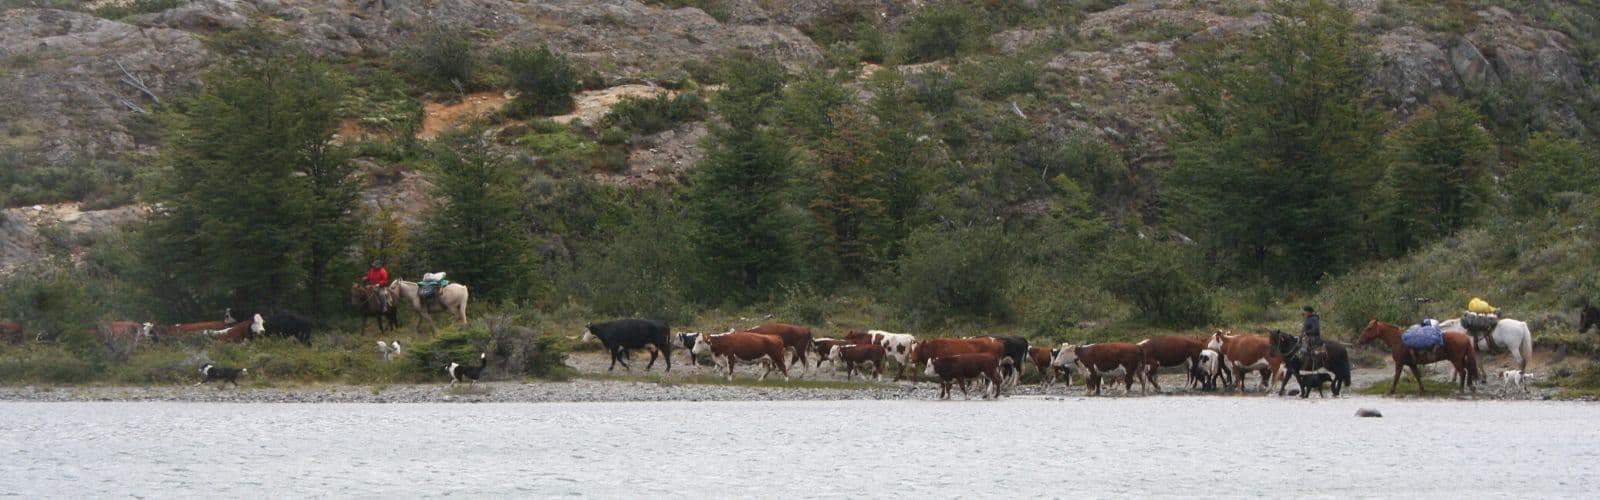 Un grupo de vacas junto a la Huella de los Pioneros.